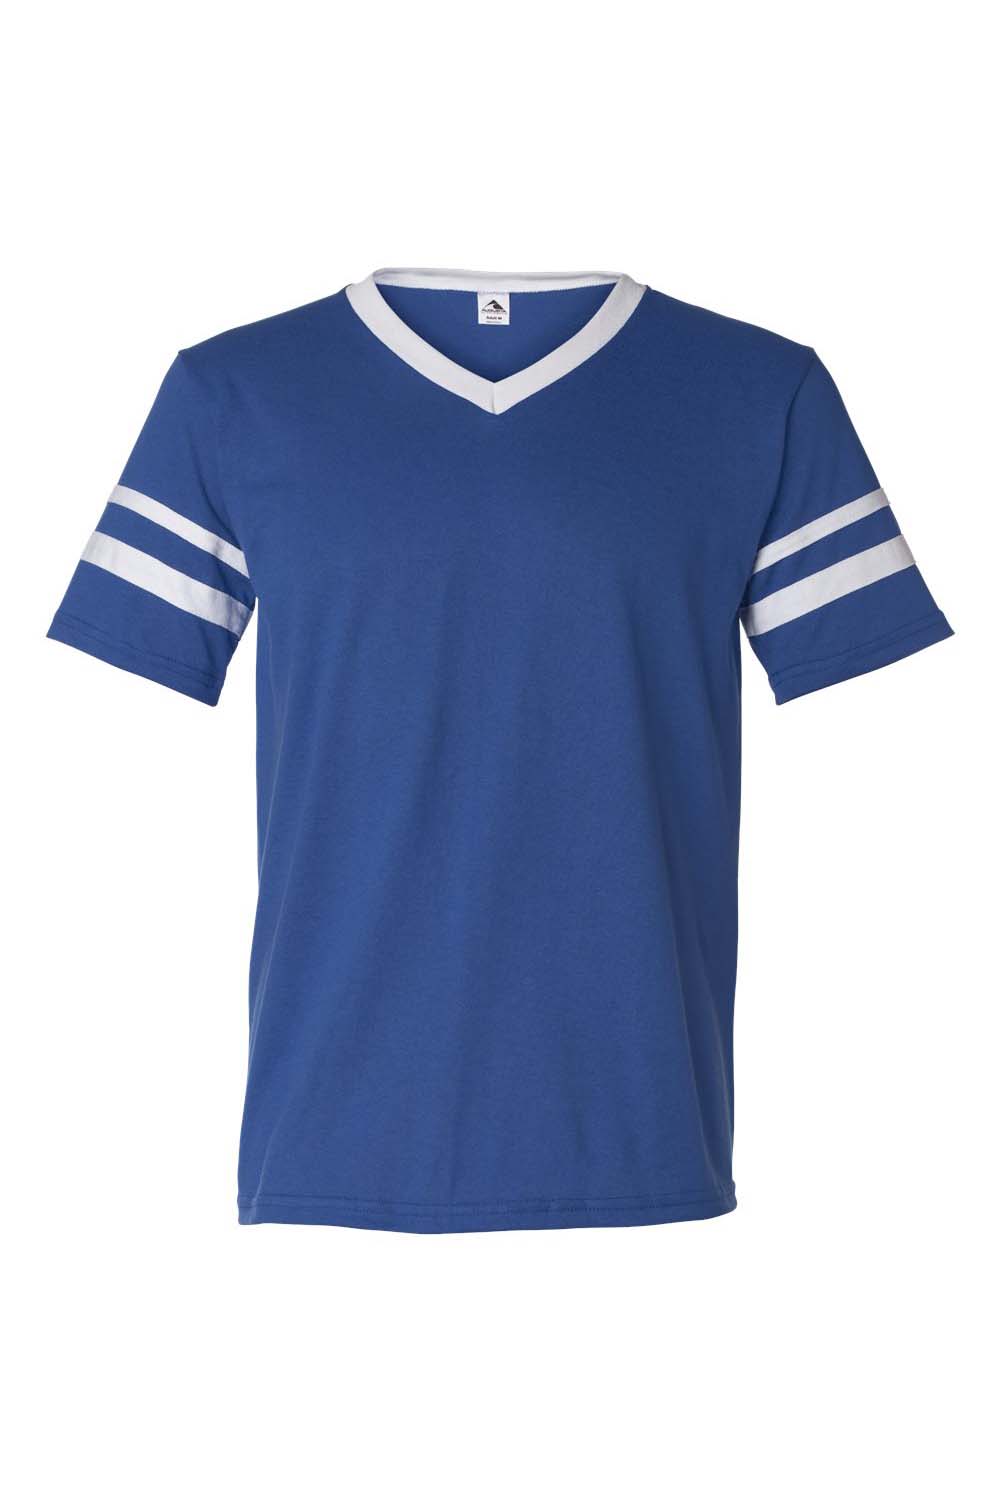 Augusta Sportswear 360 Mens Short Sleeve V-Neck T-Shirt Royal Blue/White Model Flat Front